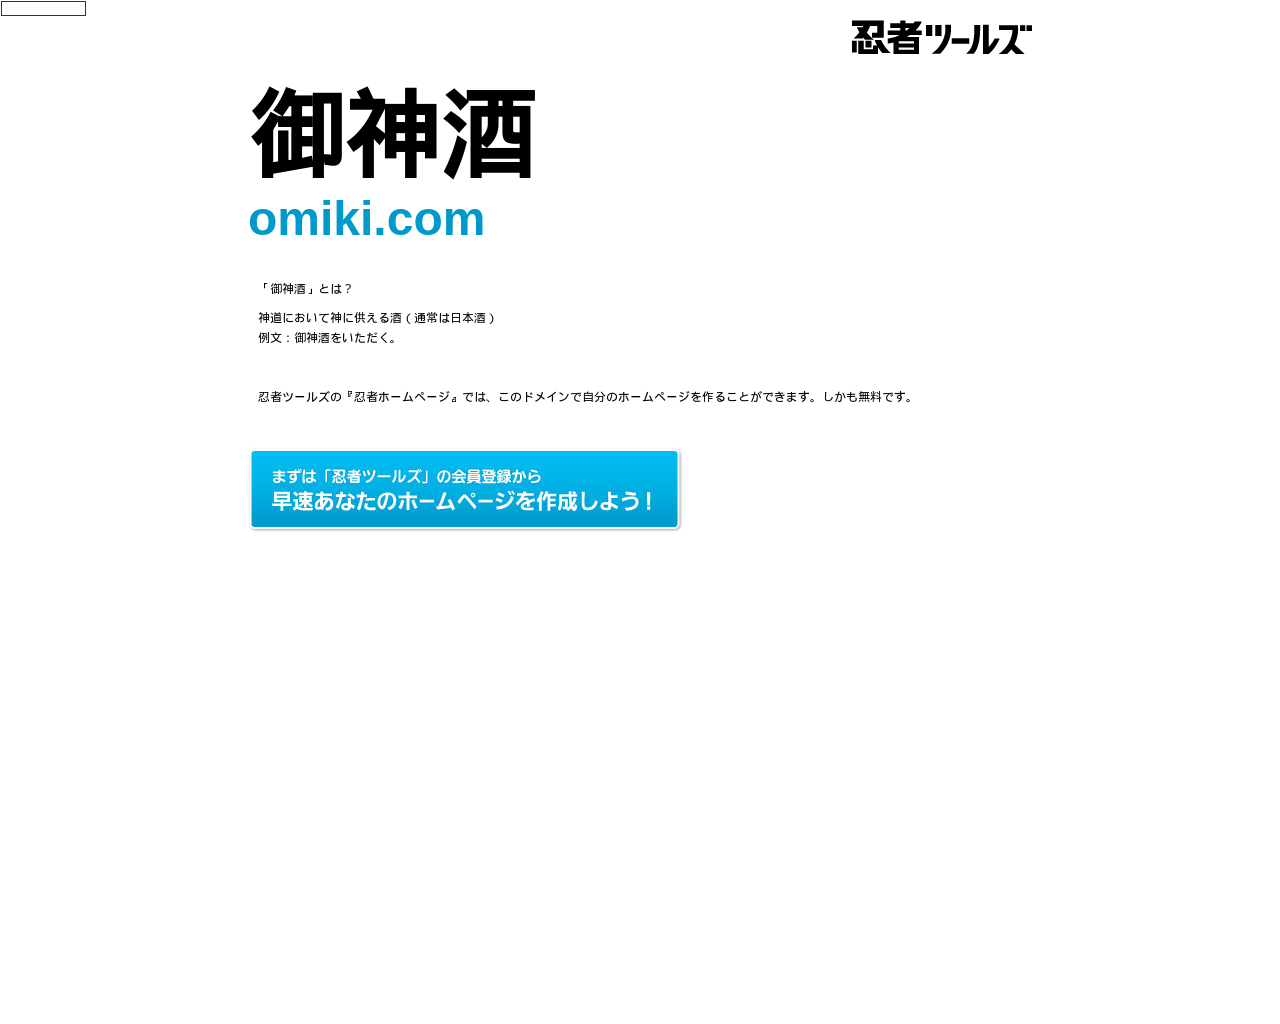 omiki.com